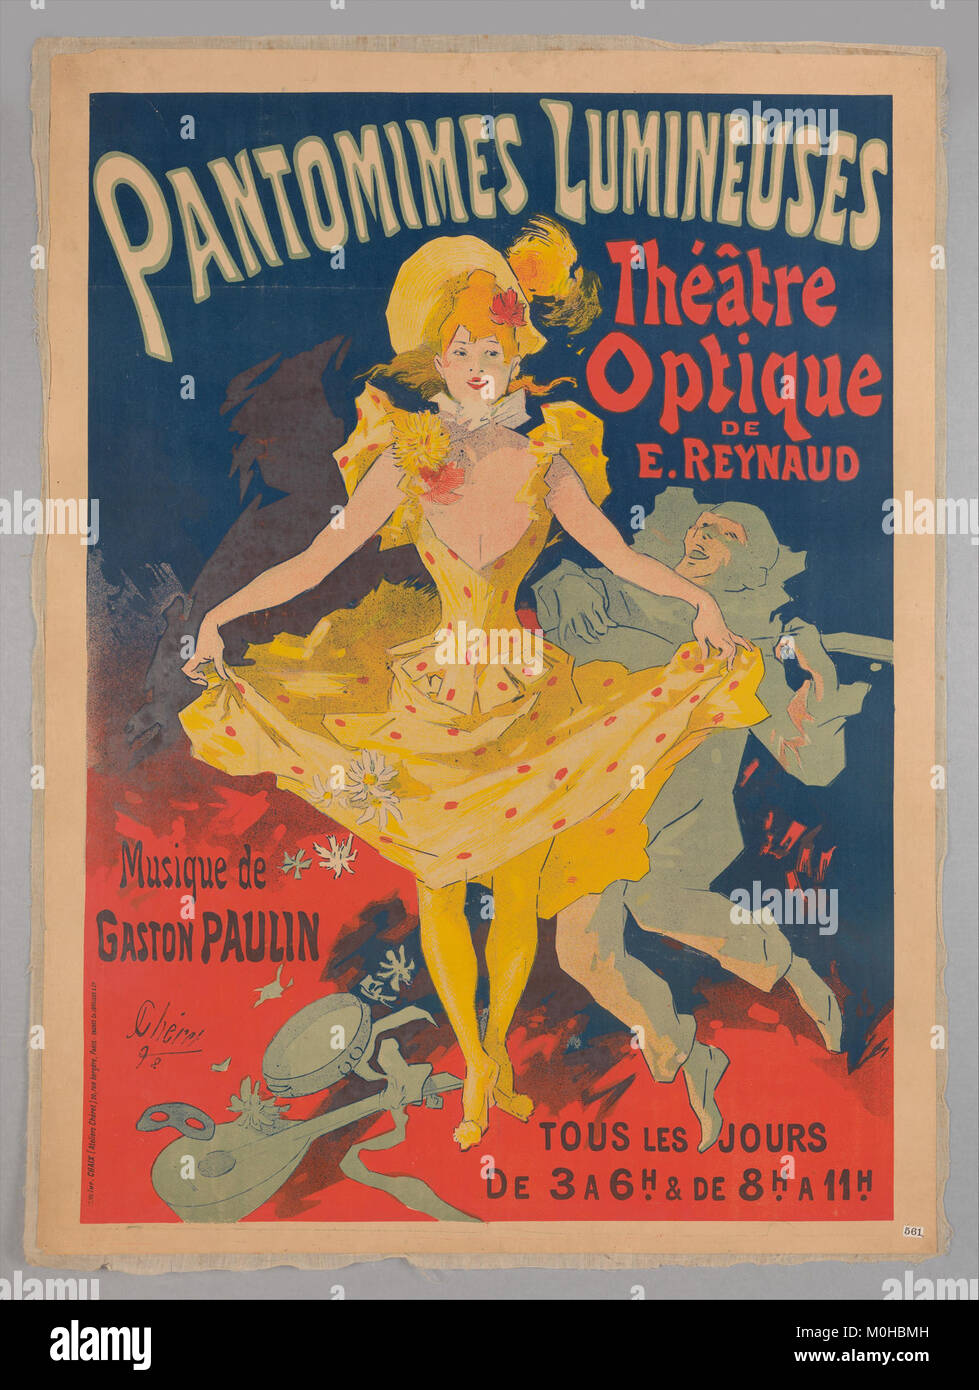 Musée Grévin, Pantomimes Lumineuses, Théâtre optique de E. Reynaud, musique de Gaston Paulin MET DP358281 Stock Photo